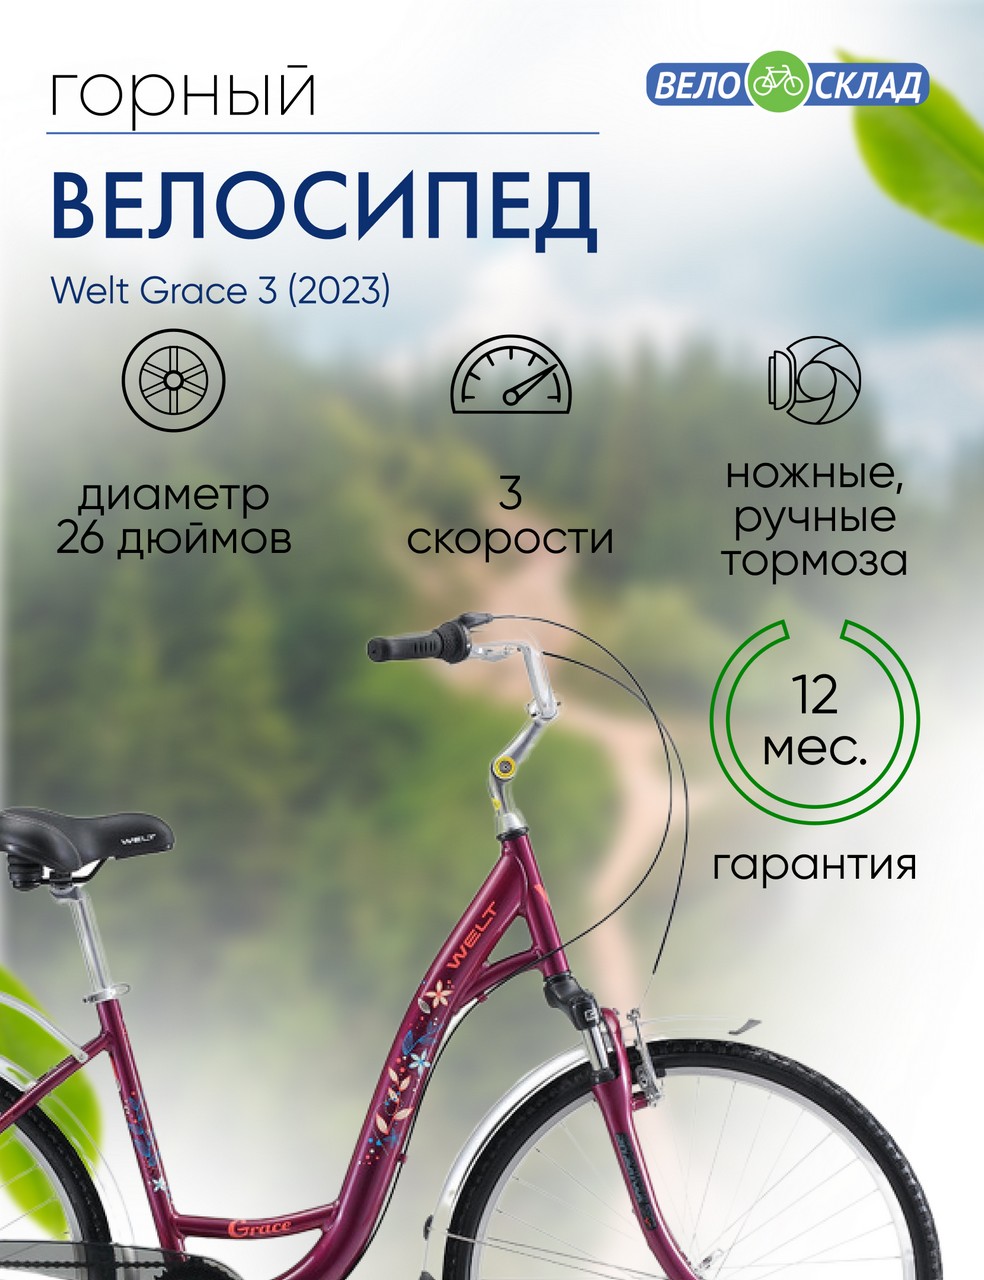 Женский велосипед Welt Grace 3, год 2023, цвет Фиолетовый, ростовка 18